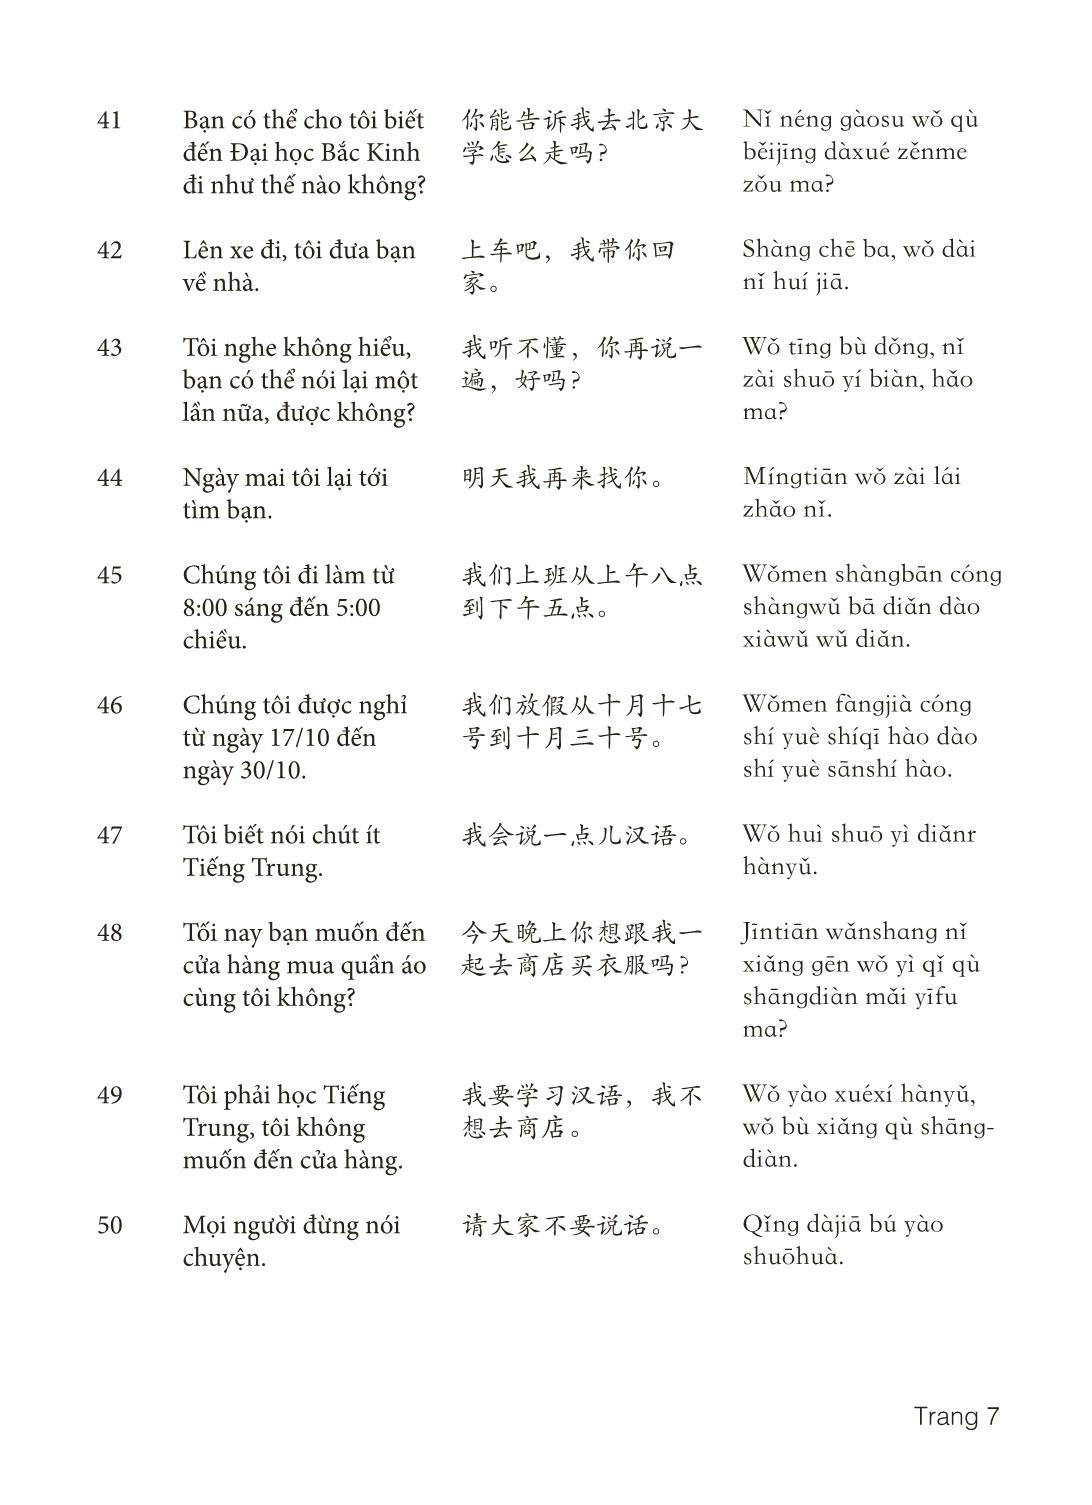 3000 Câu đàm thoại tiếng Hoa - Phần 7 trang 7